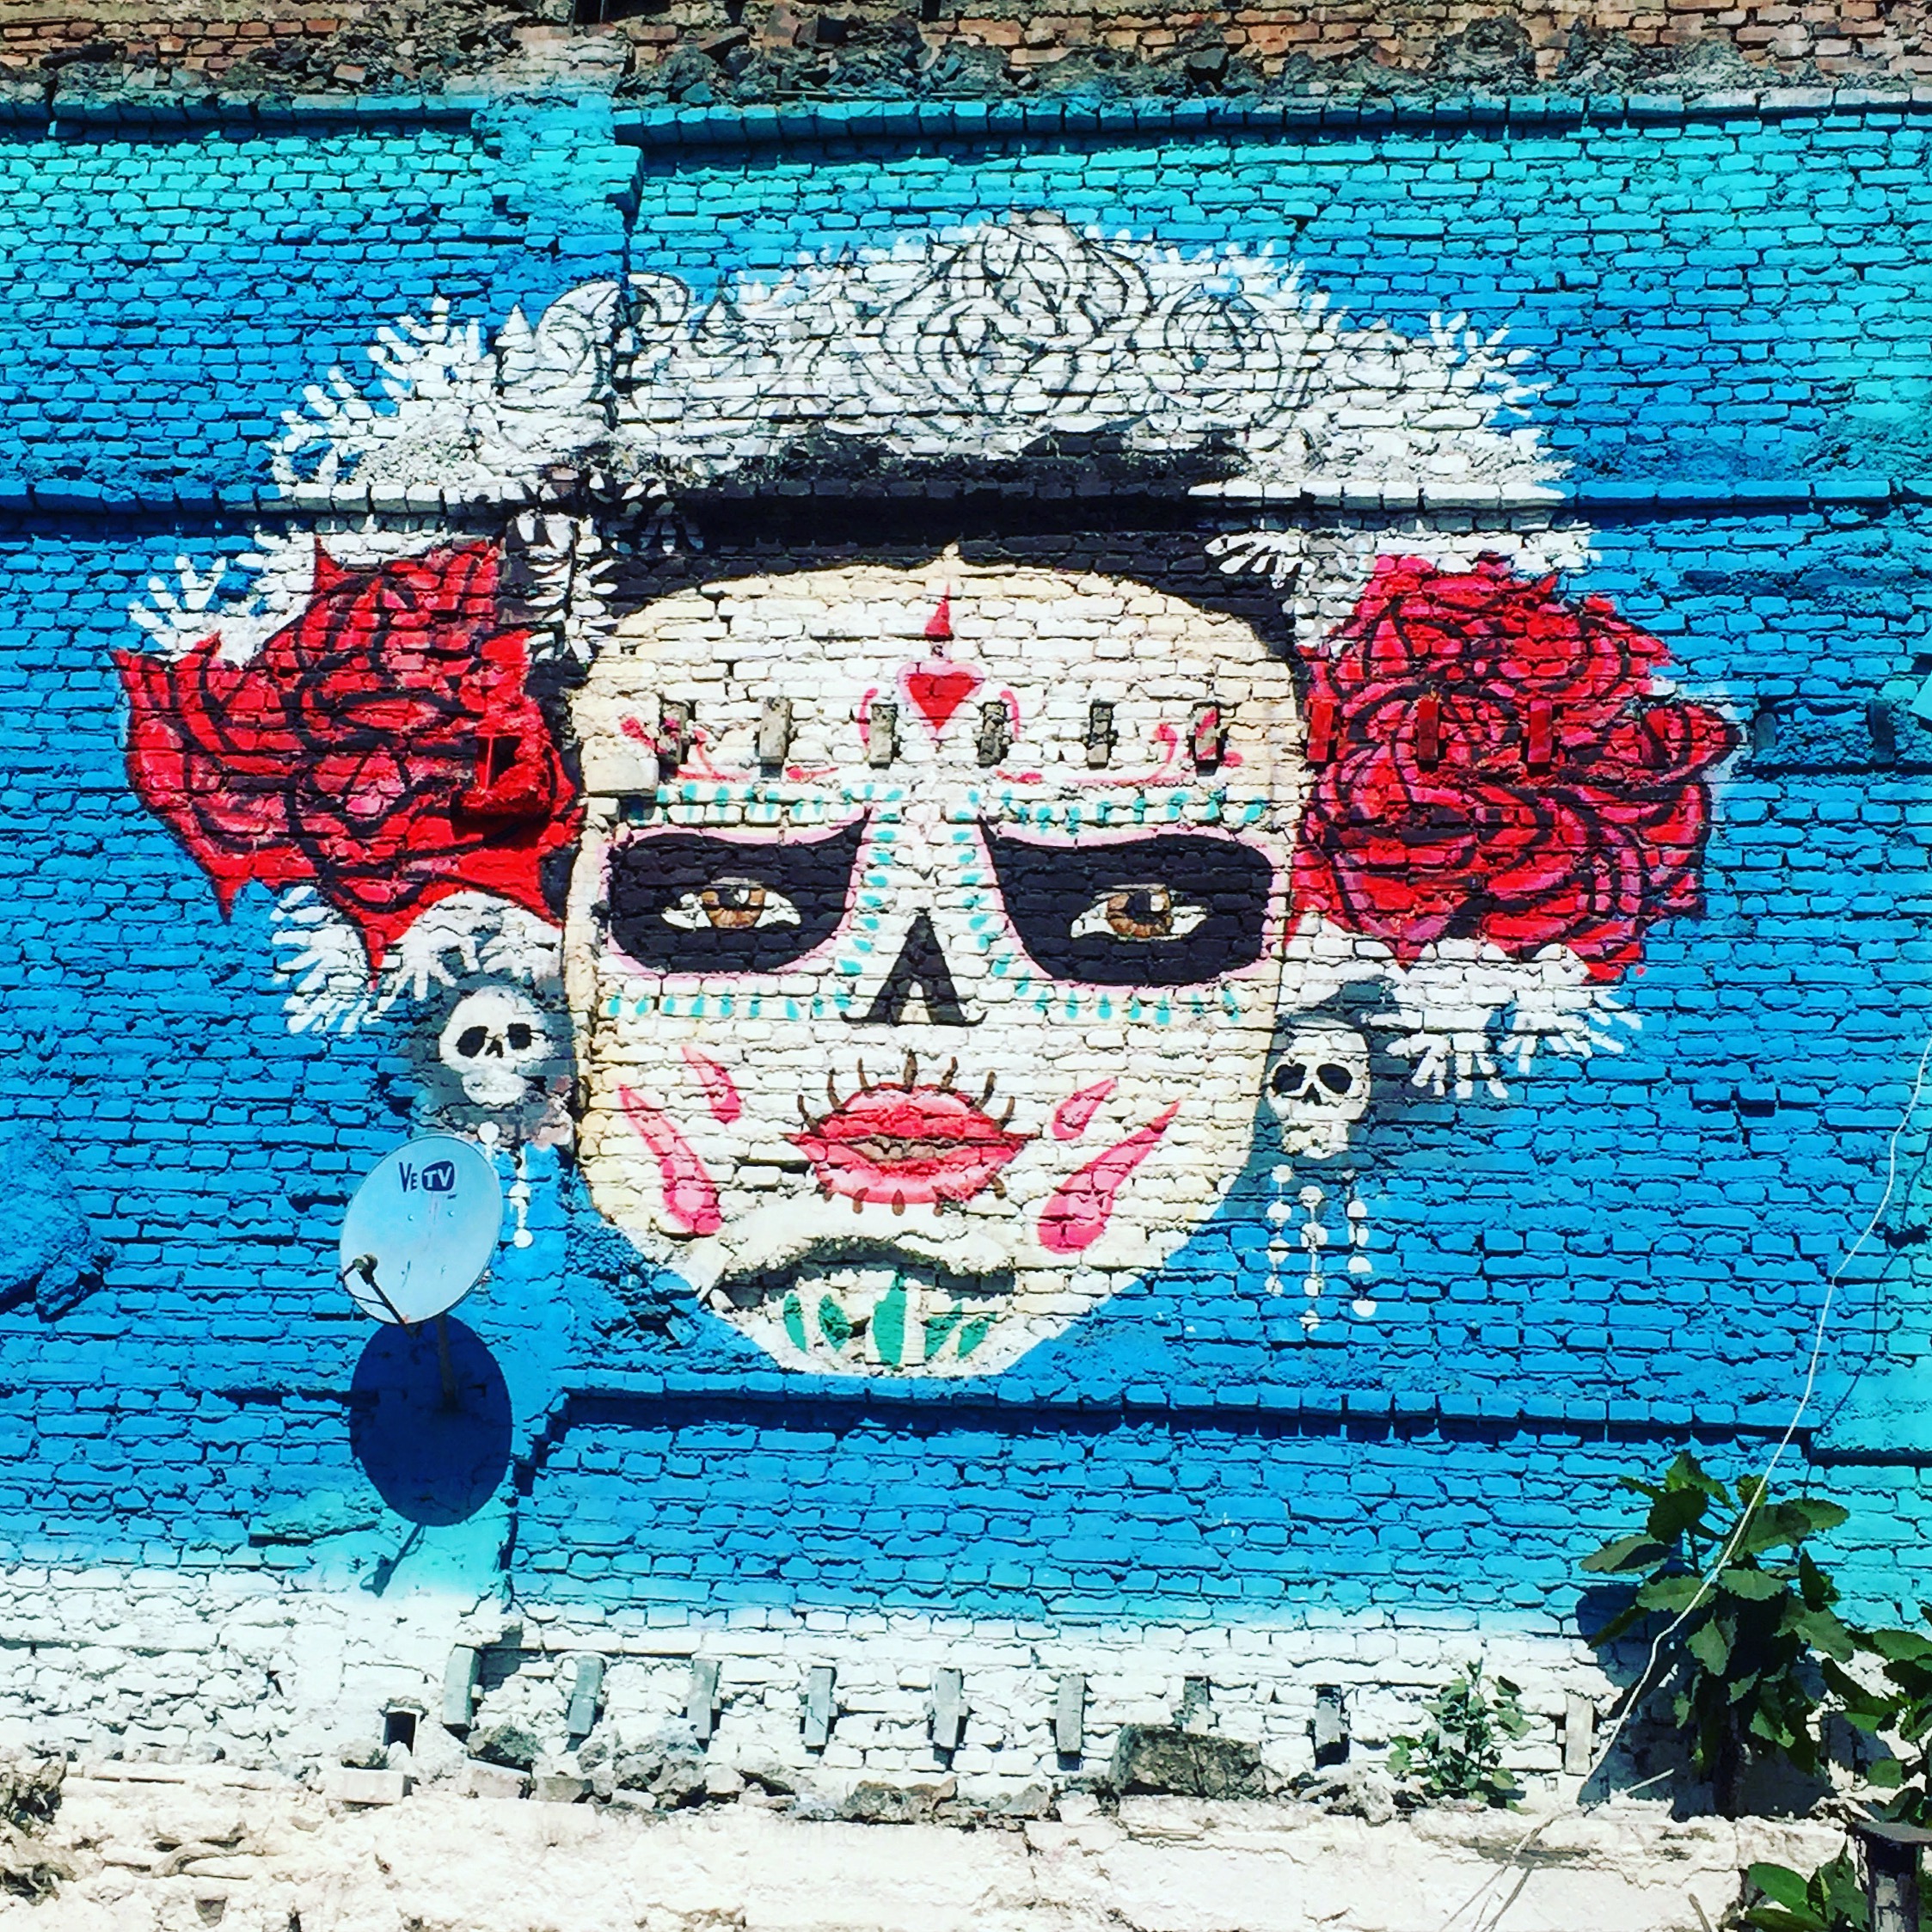 Mexico City | Tacos, Artisans, Pyramids, Frida Kahlo…Boundless Culture to Discover